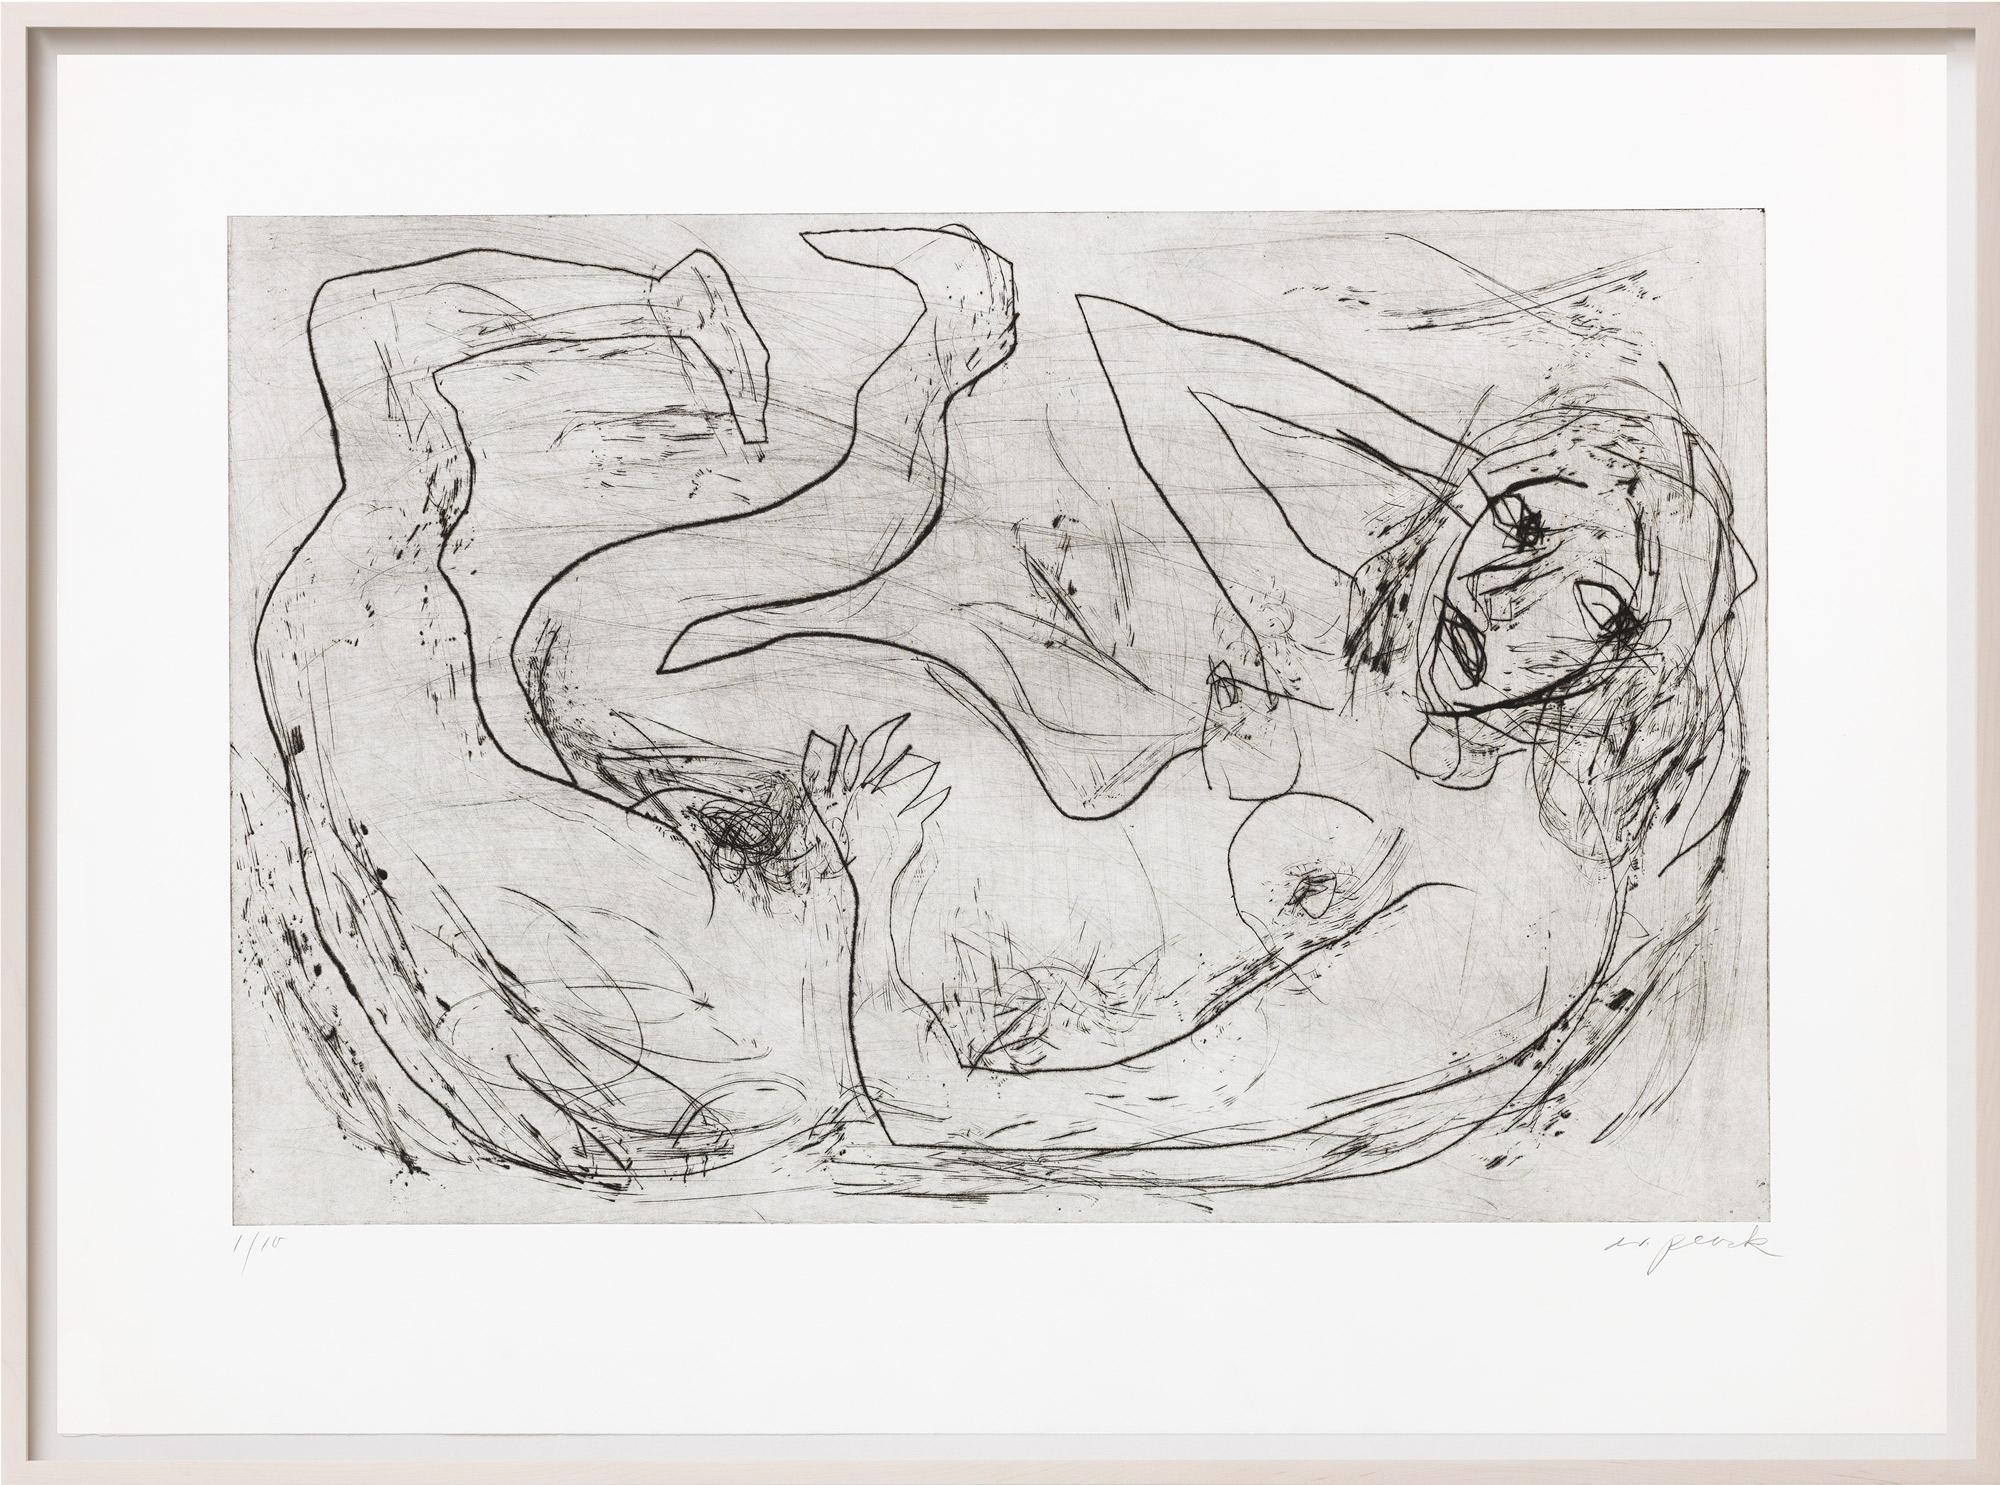 Bild "Akt mit krummen Beinen" (1987/88) von A. R. Penck